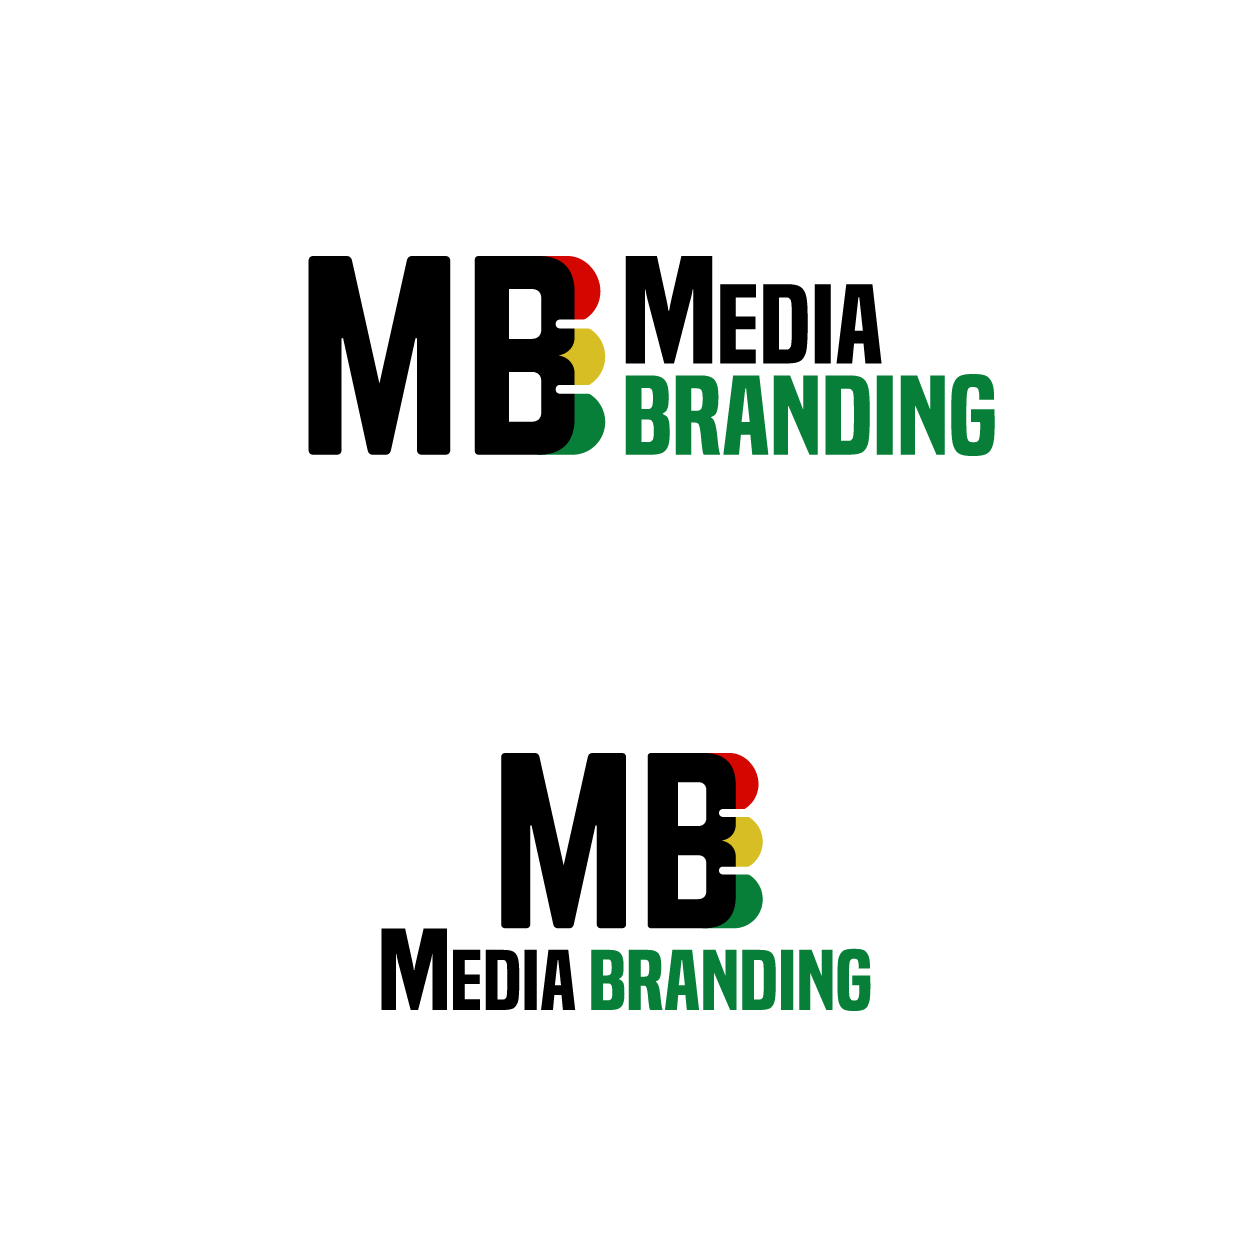 mediabranding2-01.png